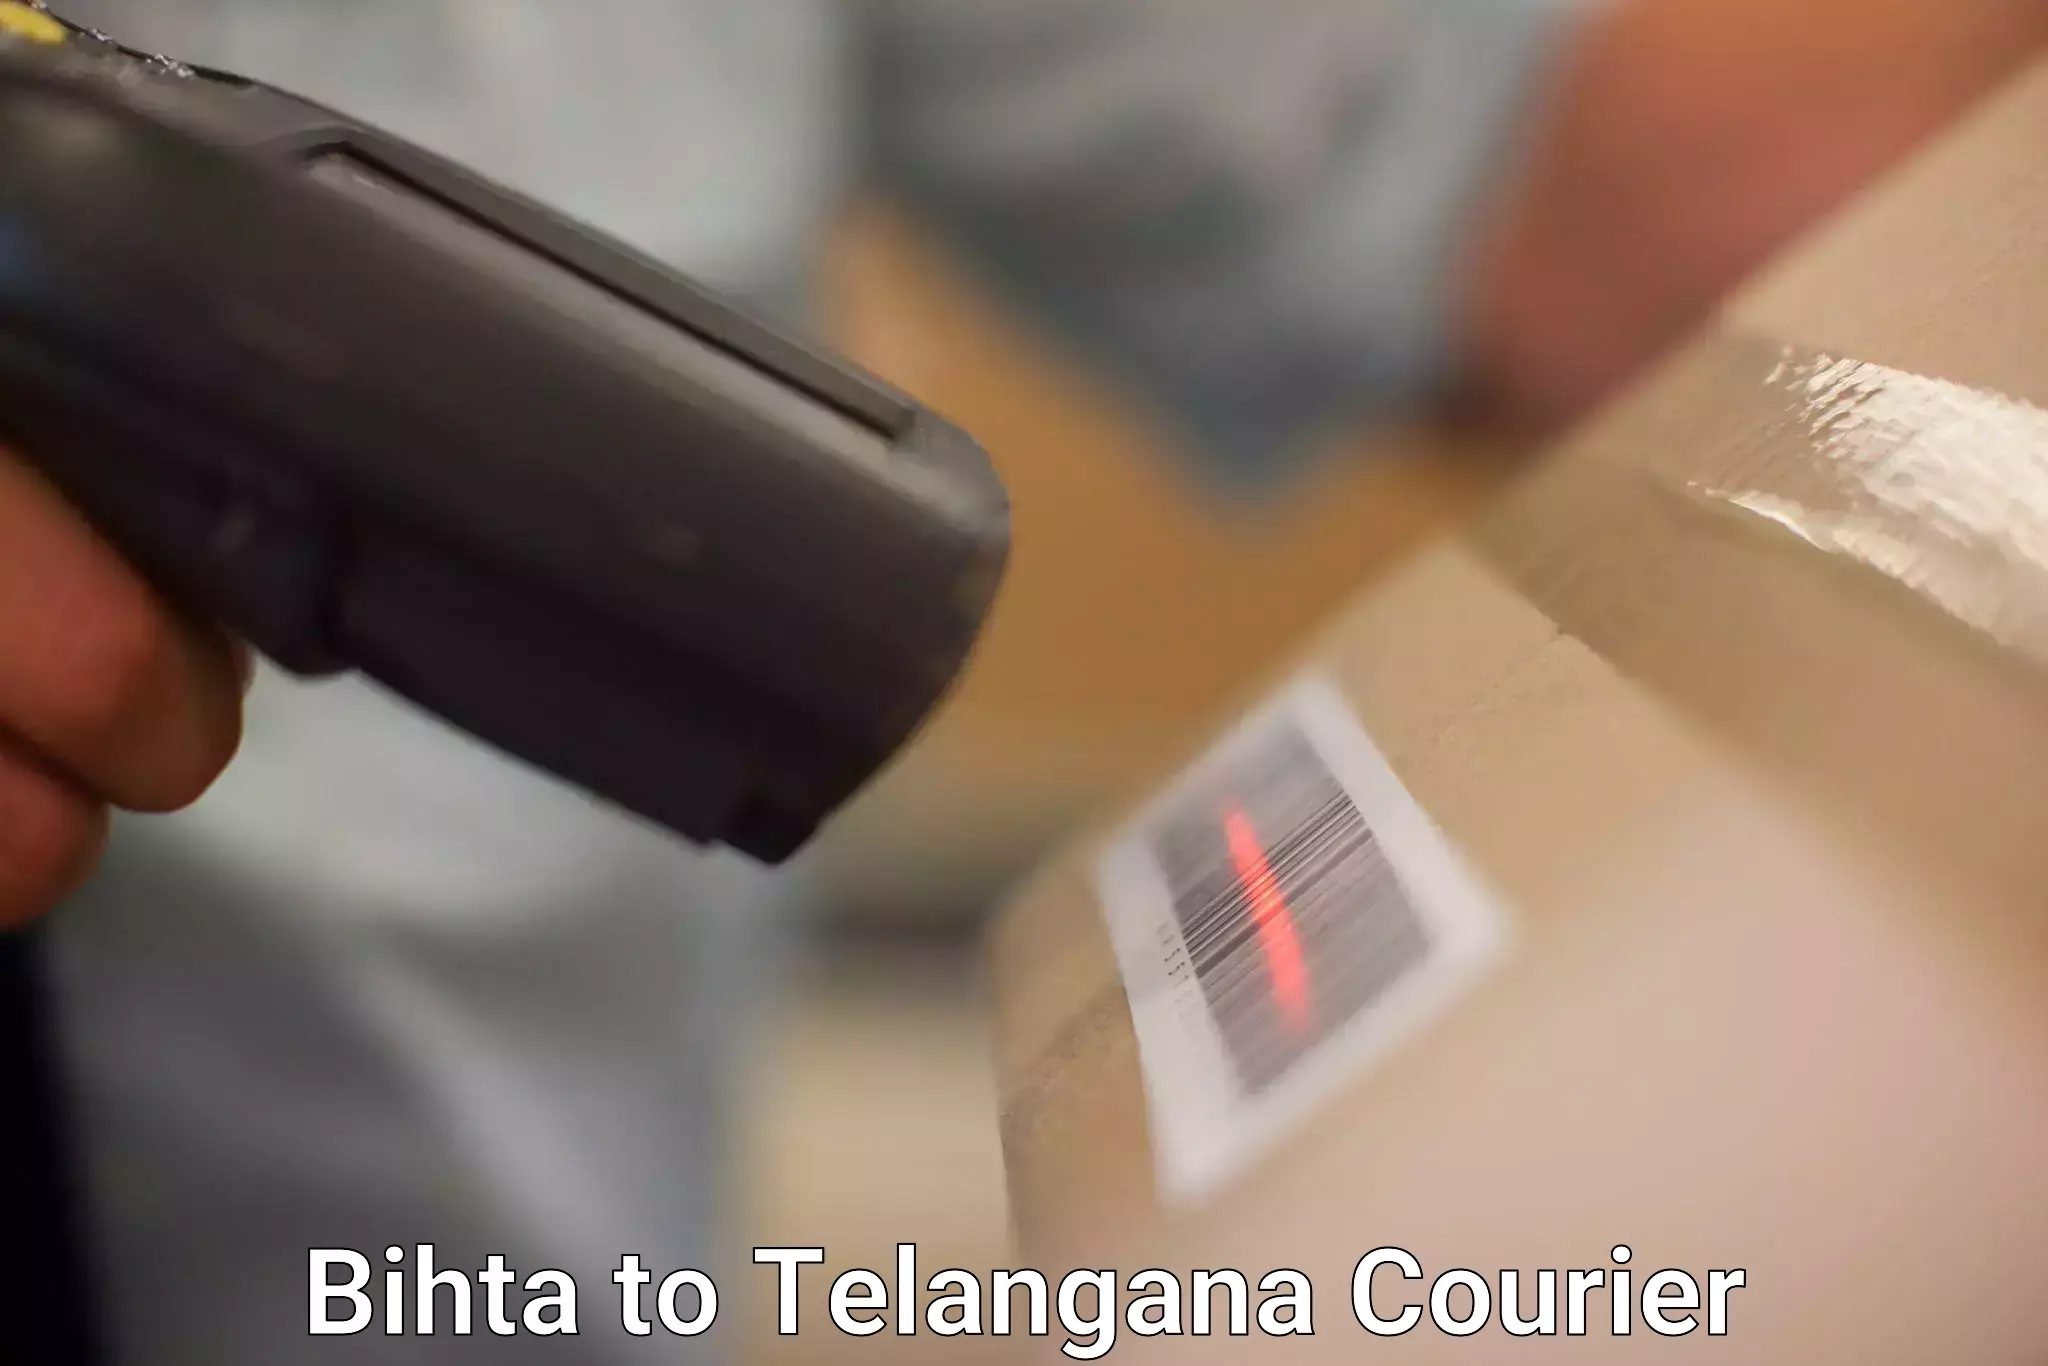 Global logistics network Bihta to Gangadhara